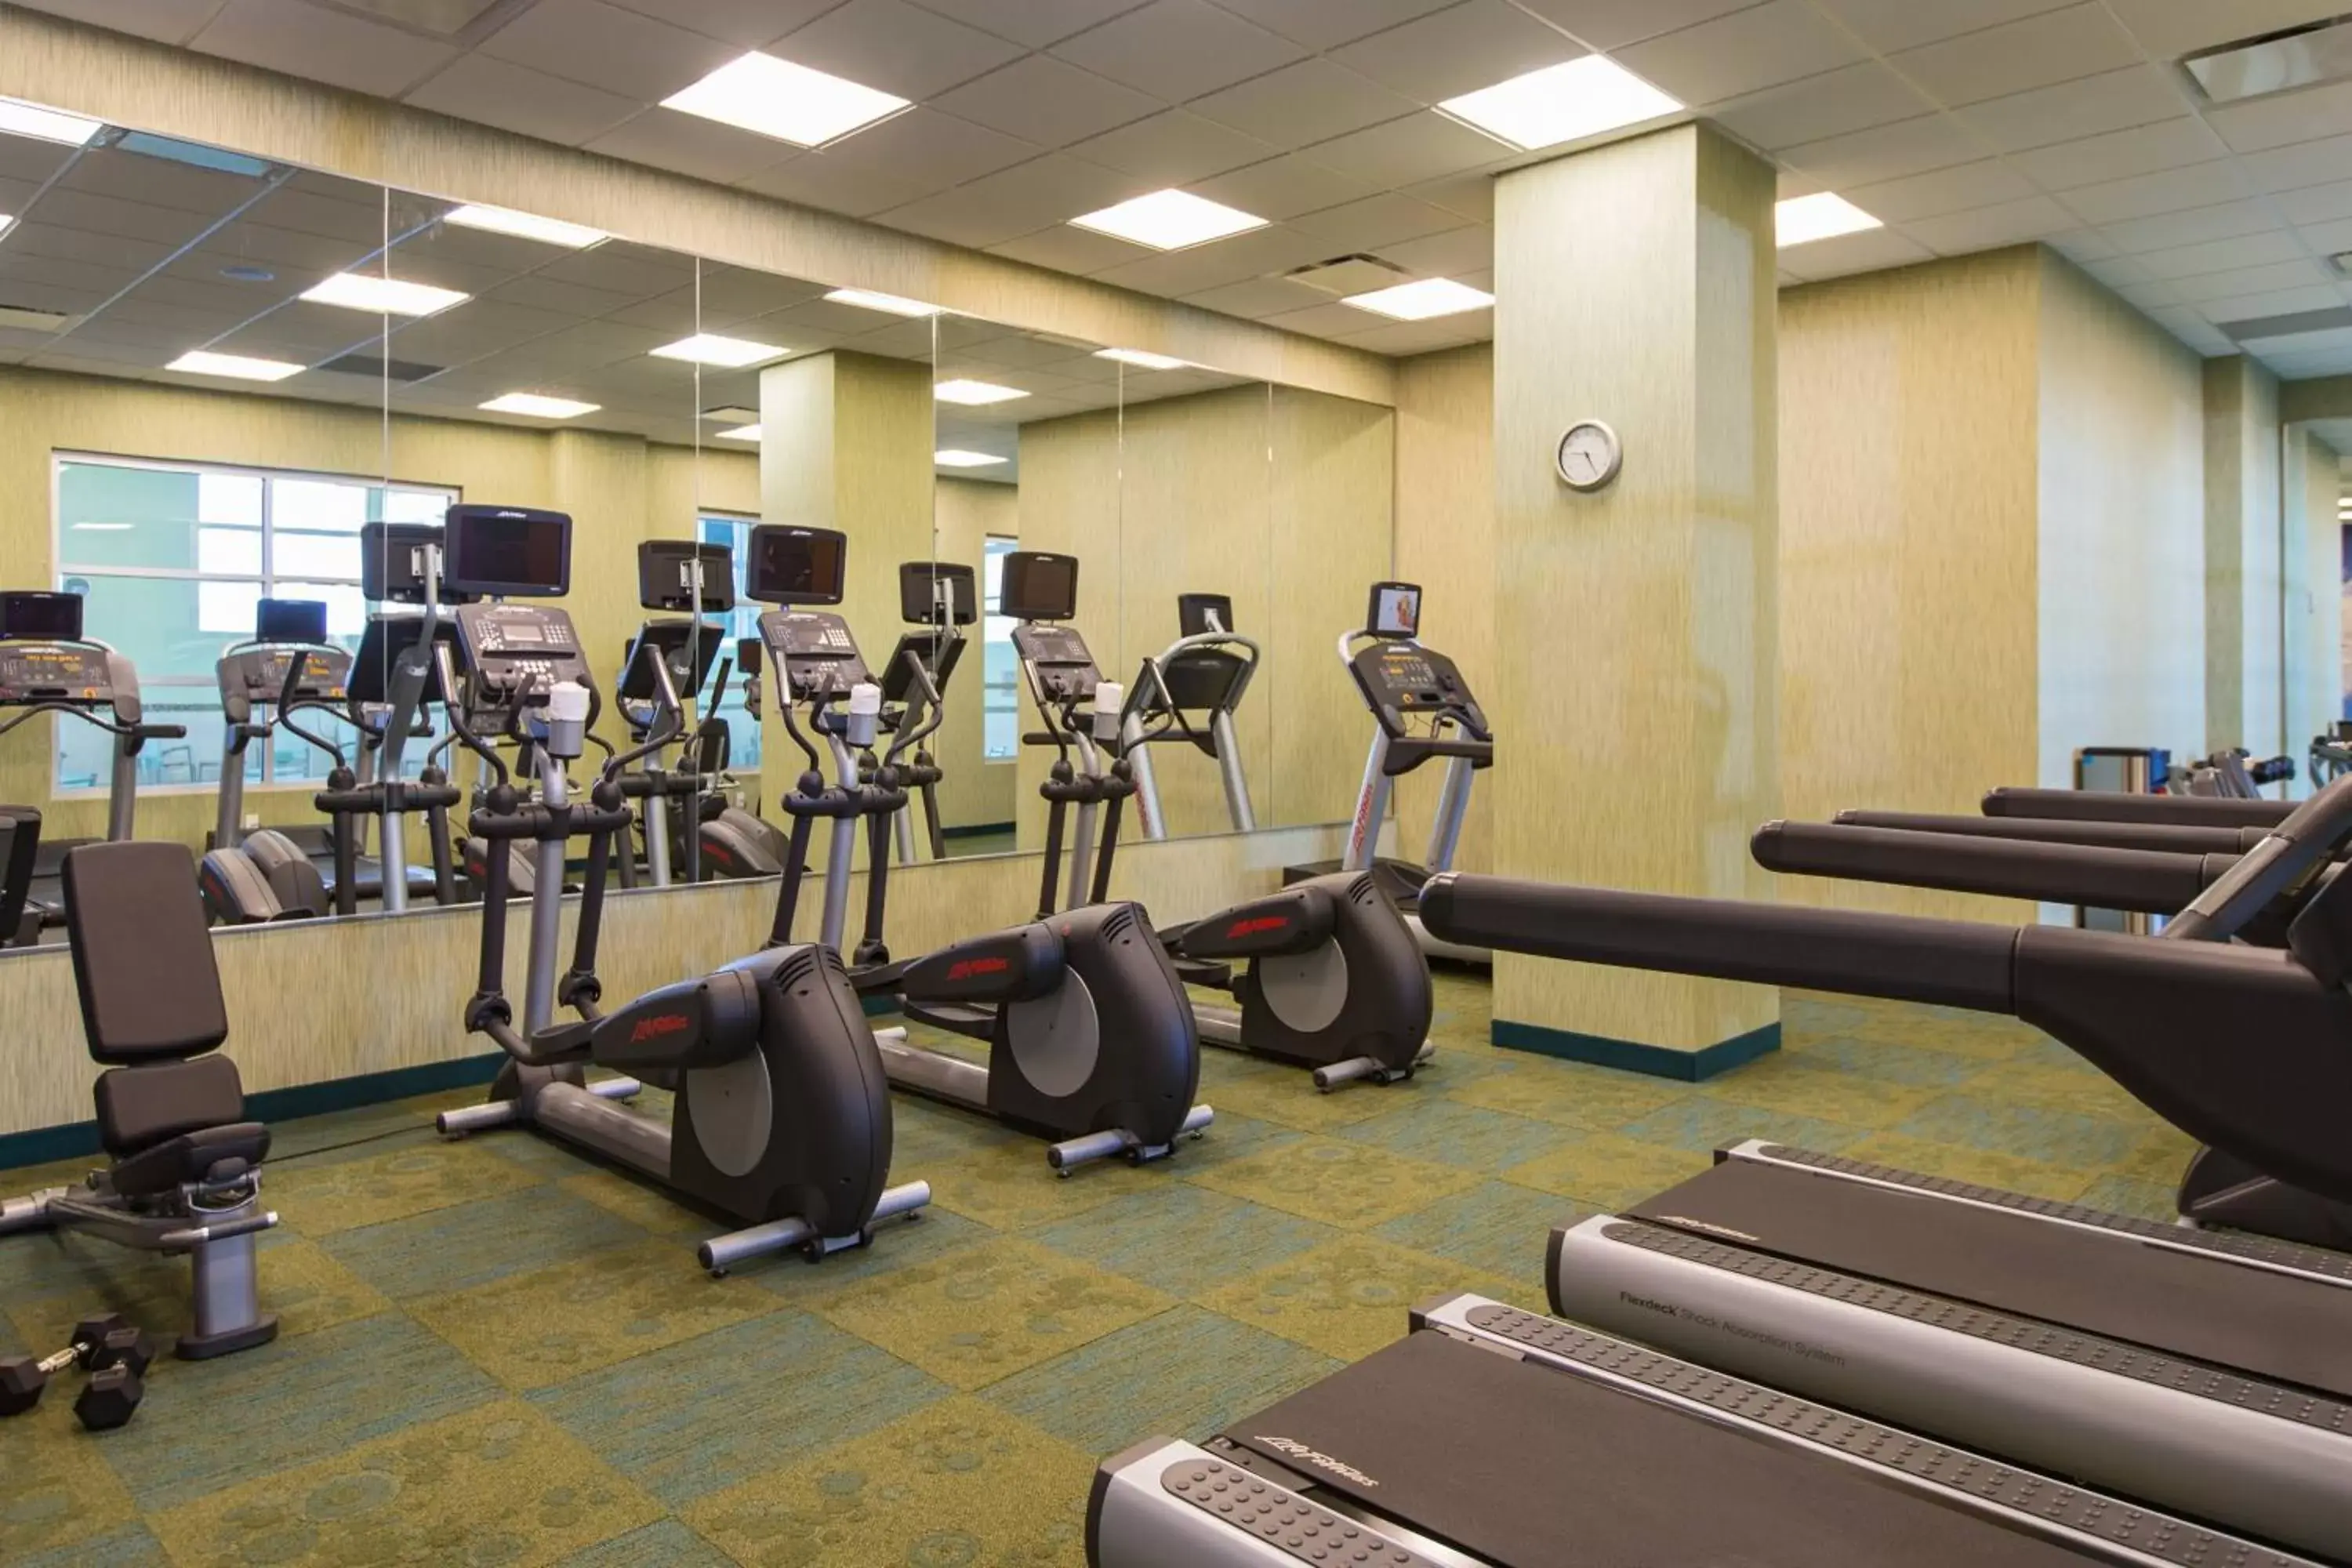 Fitness centre/facilities, Fitness Center/Facilities in Residence Inn by Marriott Nashville Vanderbilt/West End